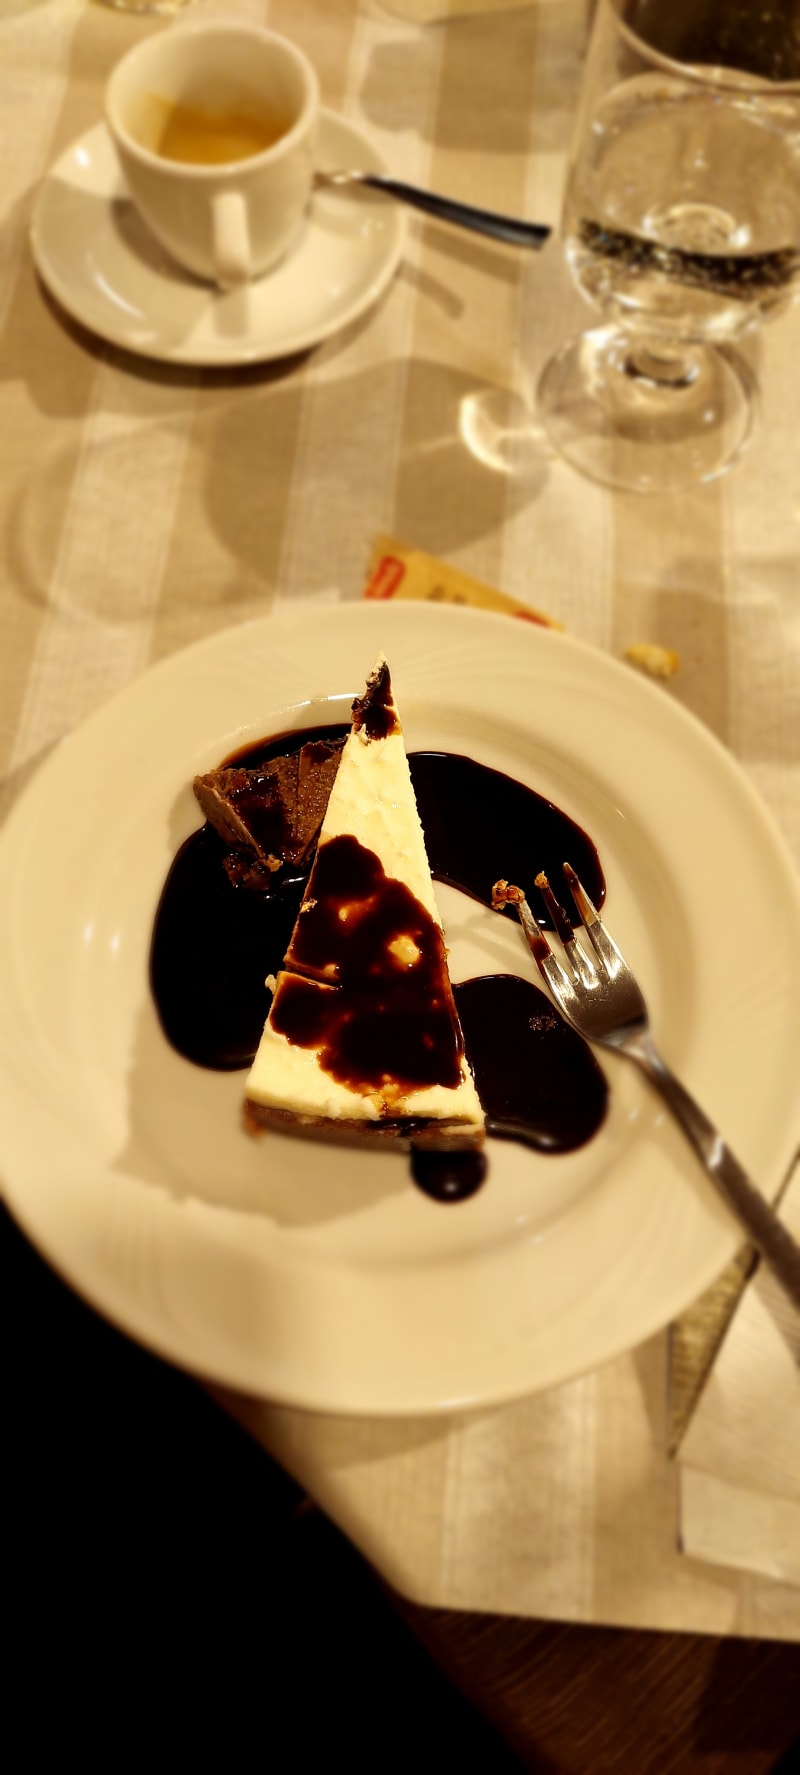 Chees cake al cioccolato  - Il Ritrovo, Cerveteri